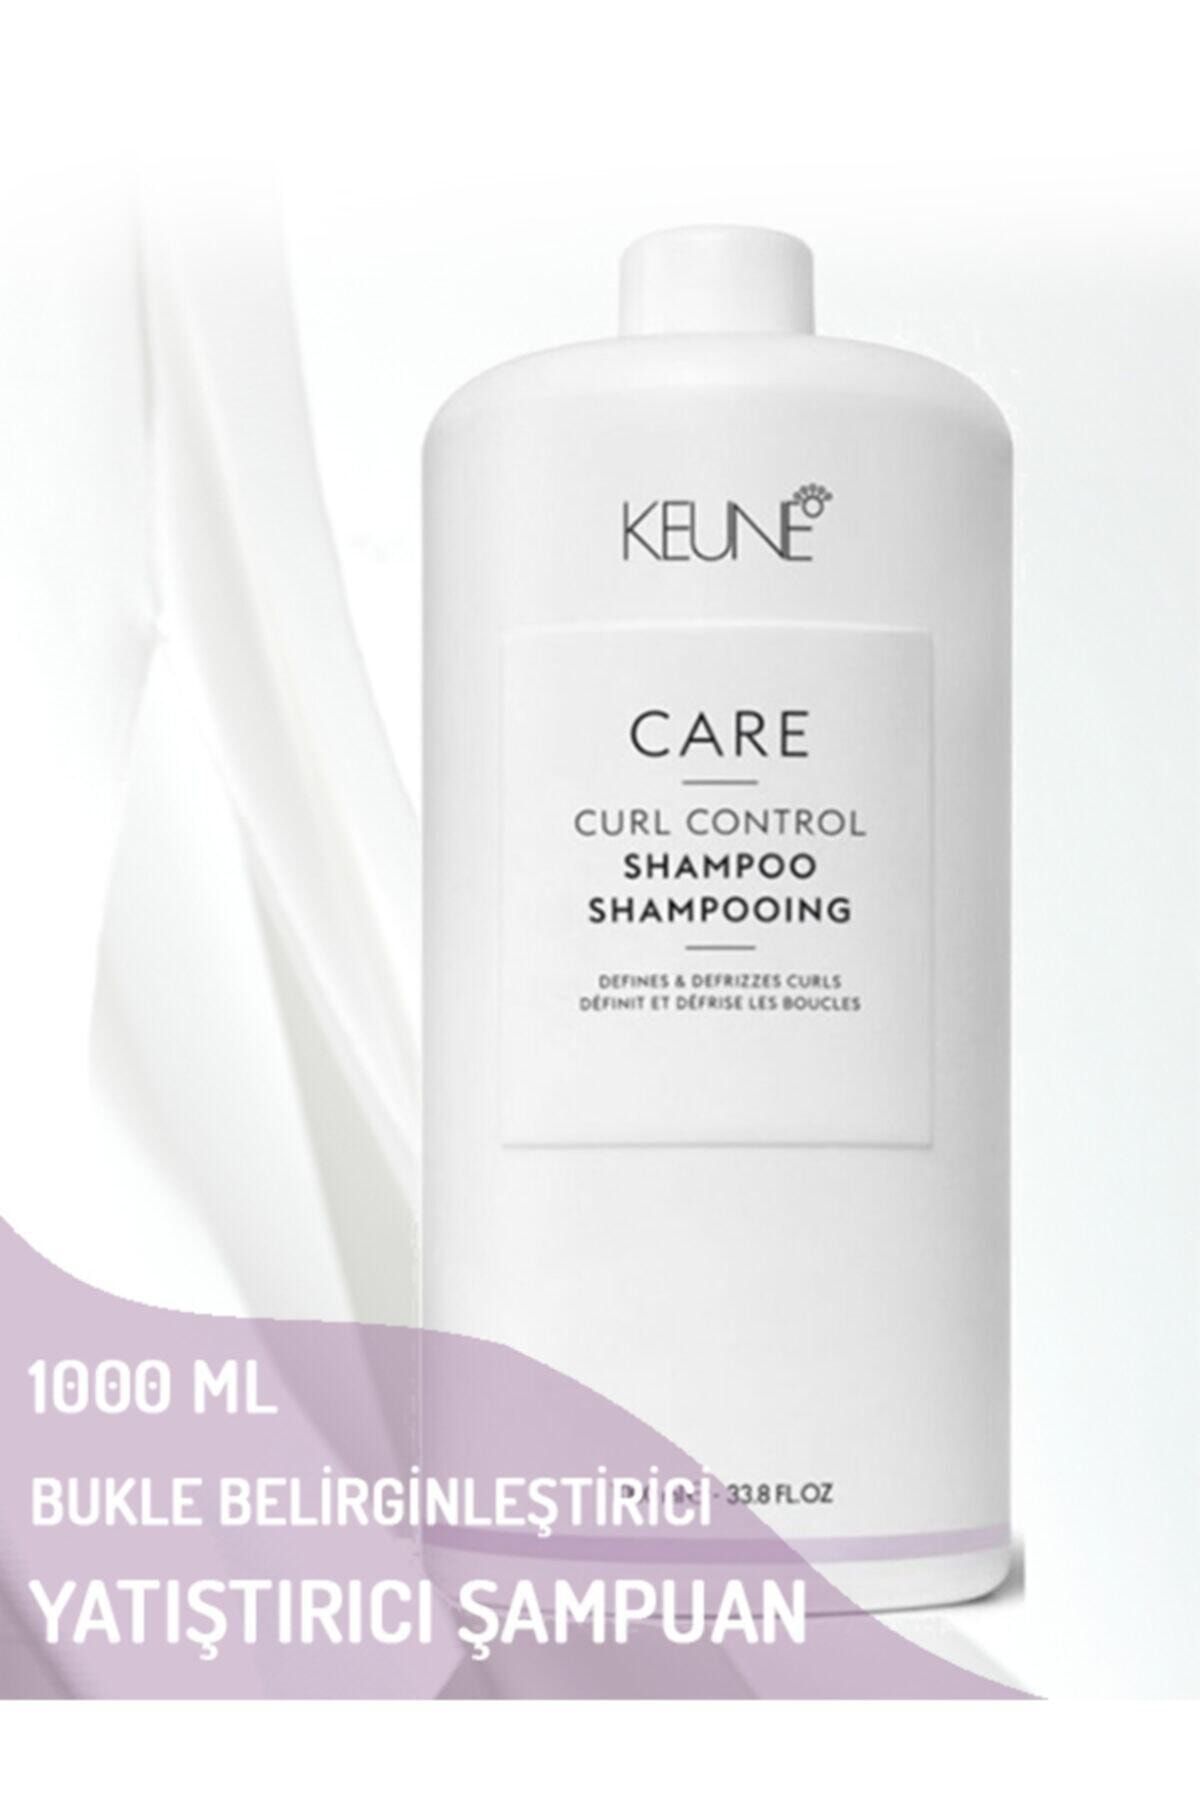 Keune Curl Control Dalgalı Ve Kıvırcık Saçlar Için Bukle Belirginleştirici Ve Yatıştırıcı Şampuan 1000 ml